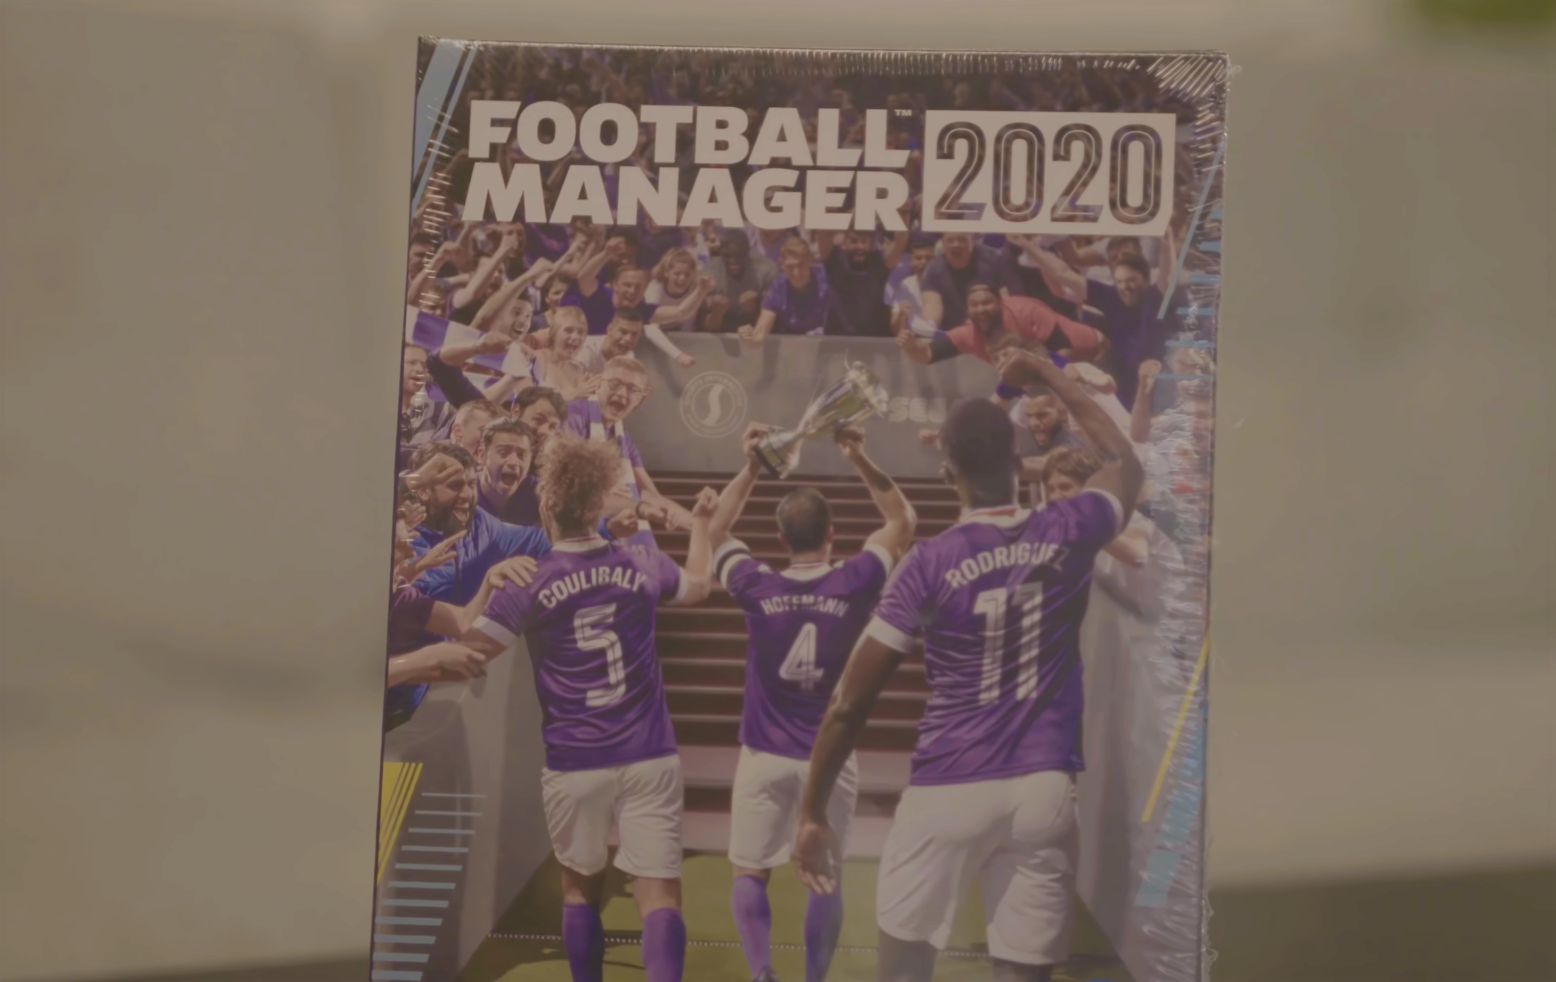 Obrazki dla "Można zjeść to pudełko" - Football Manager 2020 pierwszą grą w stuprocentowo ekologicznym opakowaniu